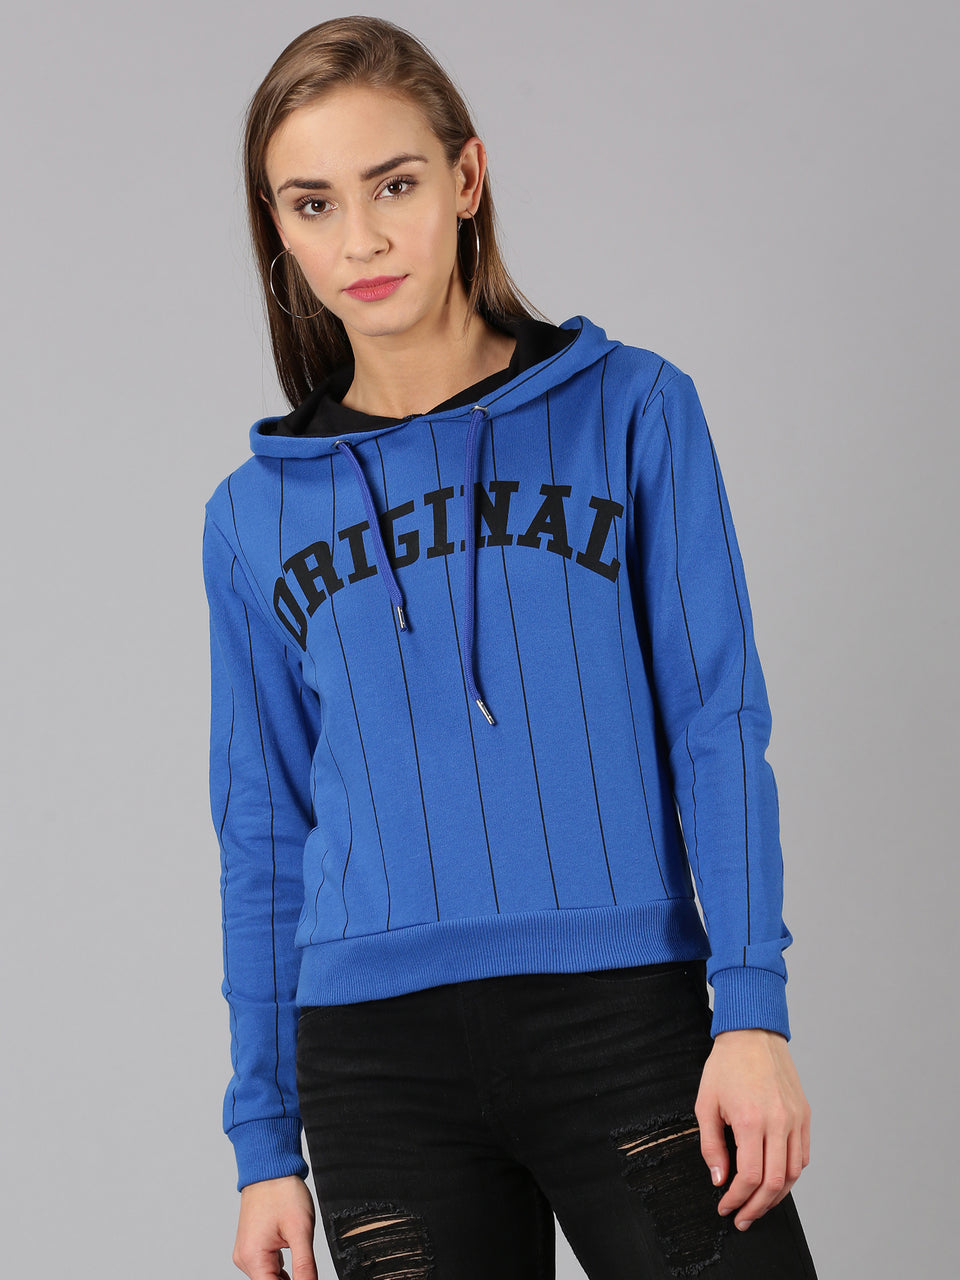 women blue printed pullover hoodie sweatshirt